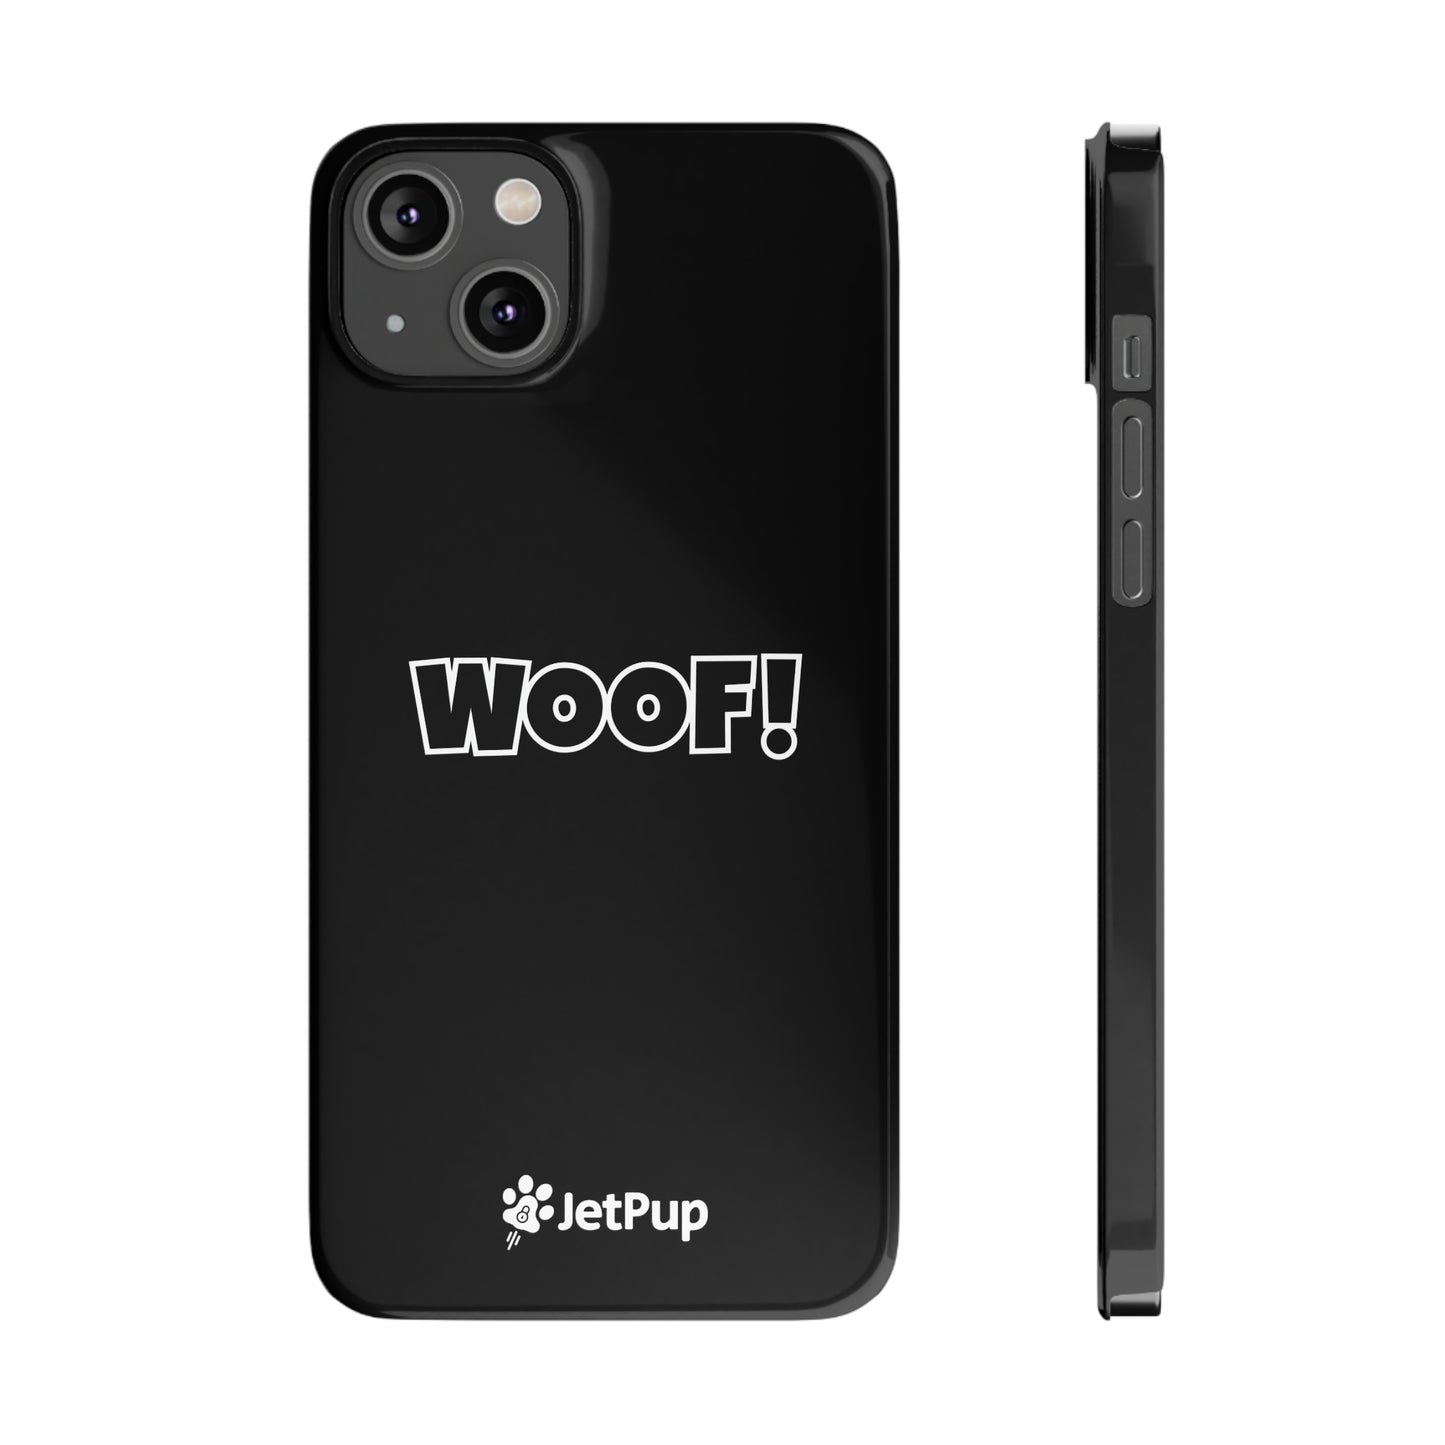 Woof Slim iPhone Cases - Black